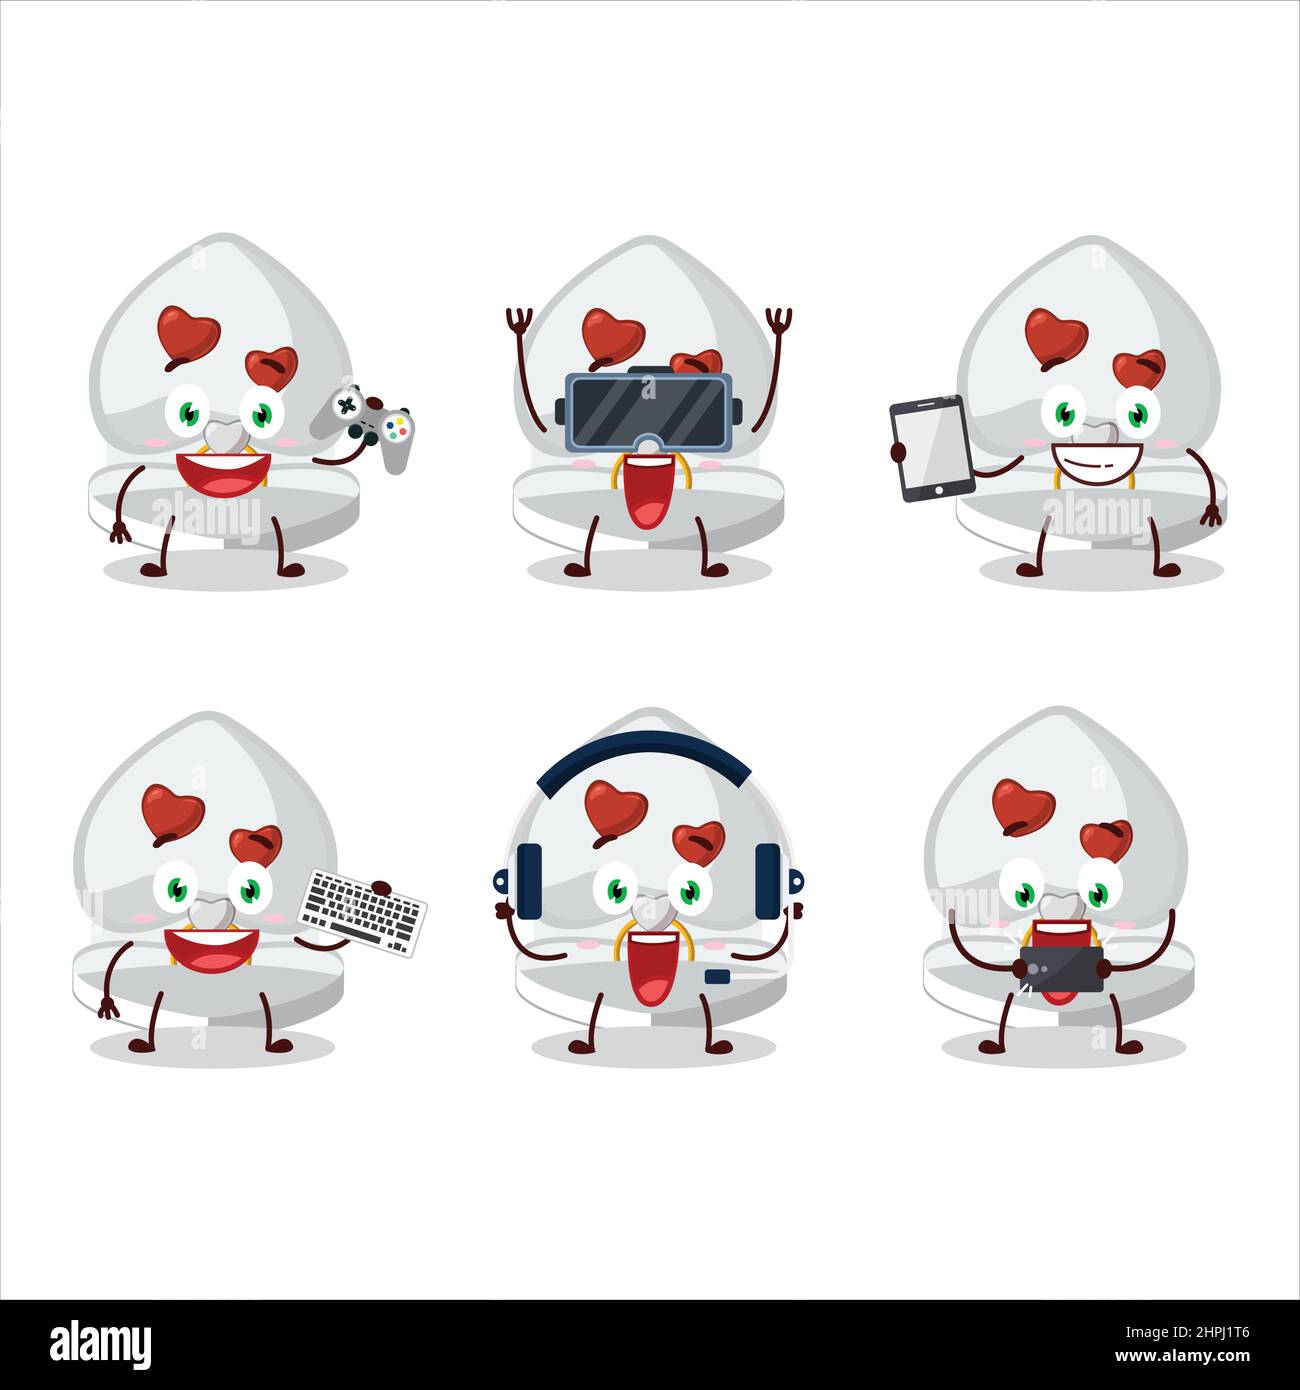 Le personnage de dessin animé de boîte d'anneau d'amour blanc joue à des jeux avec diverses émoticônes mignons. Illustration vectorielle Illustration de Vecteur